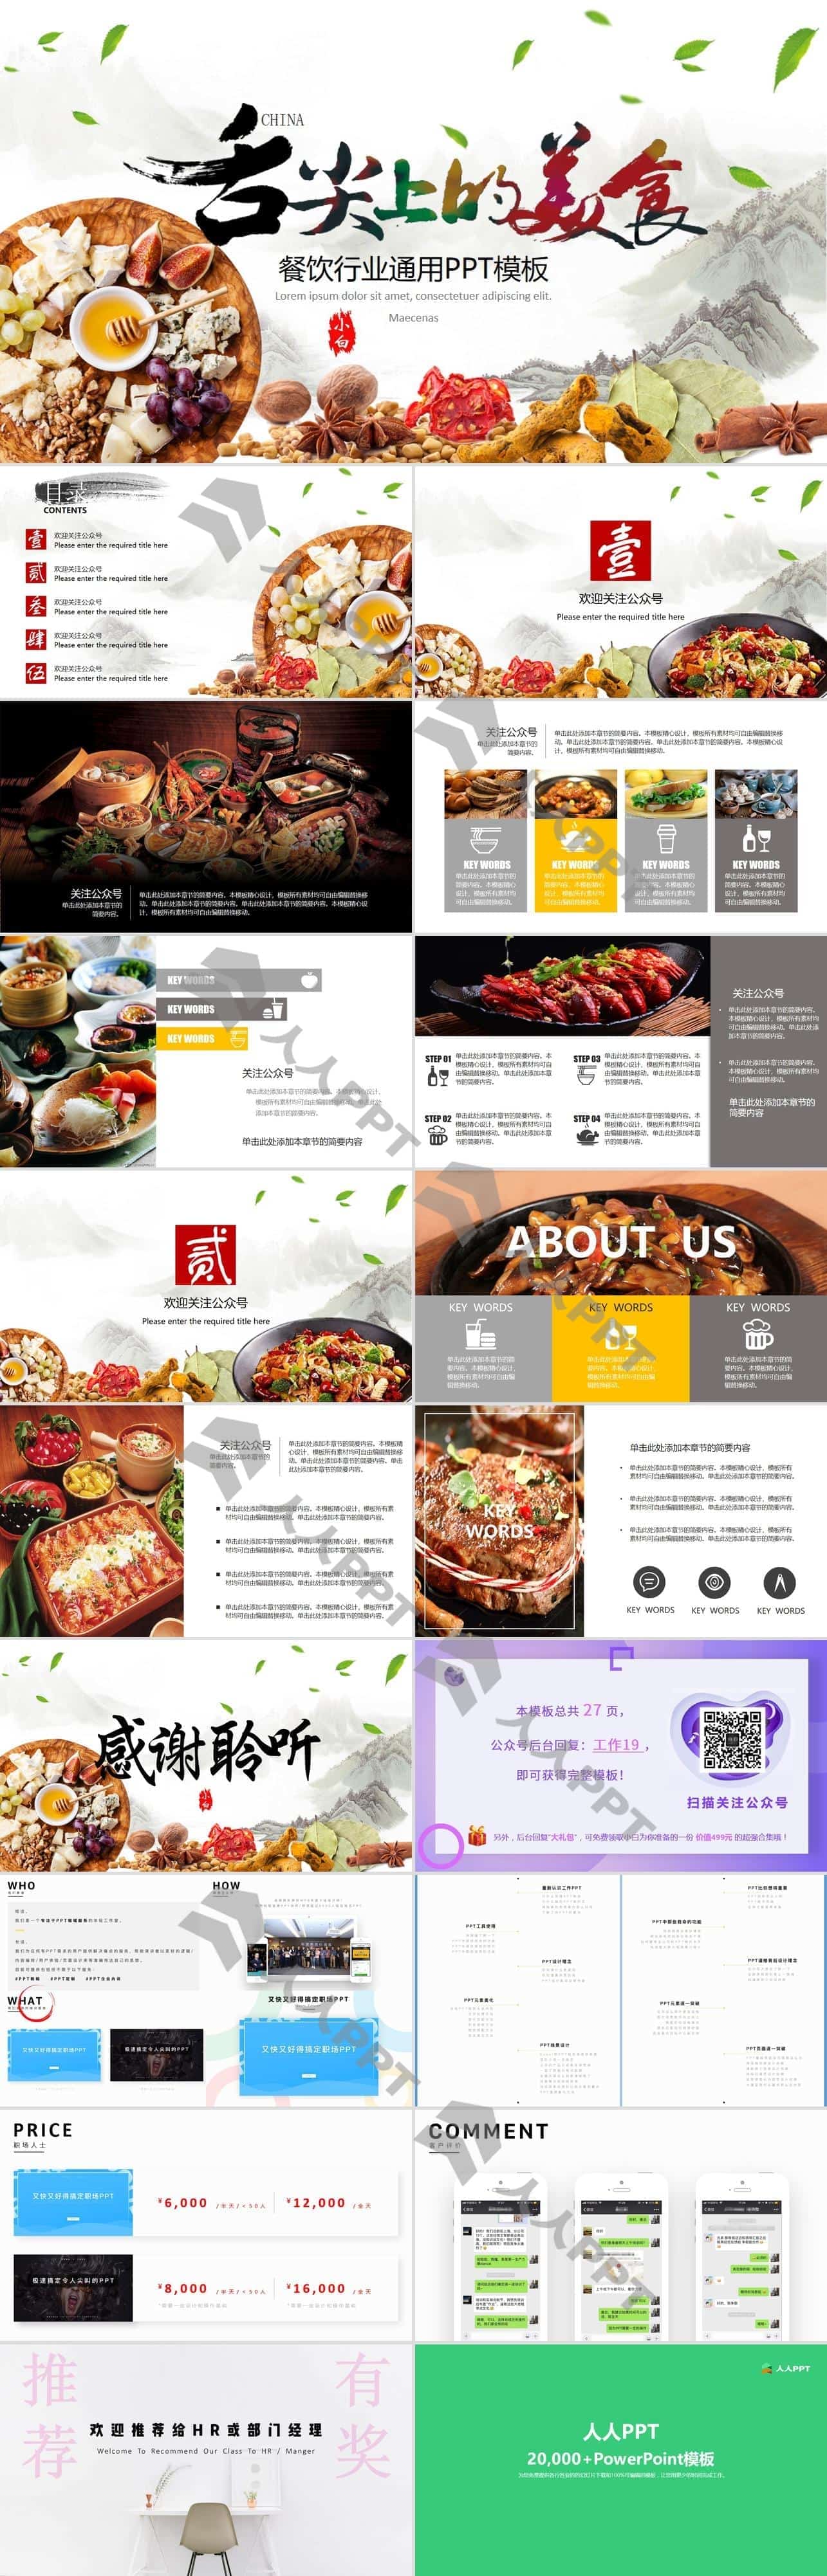 舌尖上的美食――中国传统美食介绍餐饮行业PPT模板长图